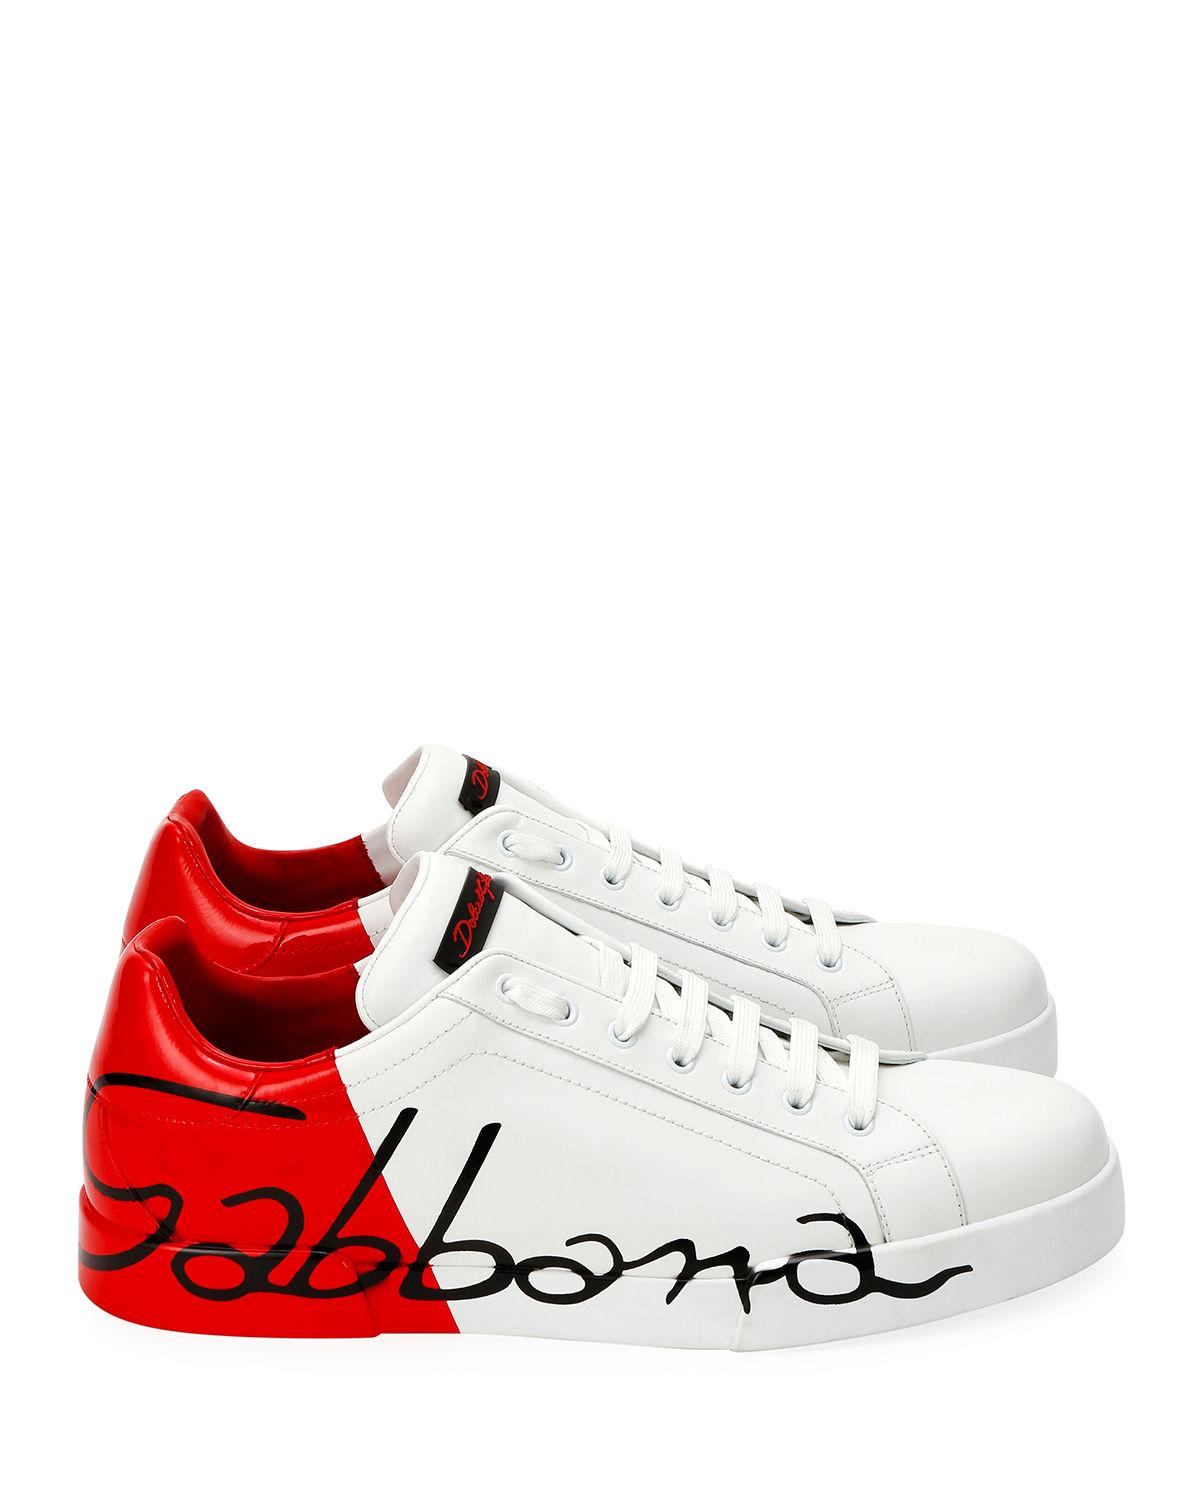 Lyst - Dolce & Gabbana Men's Signature Portofino Logo Sneakers in White ...